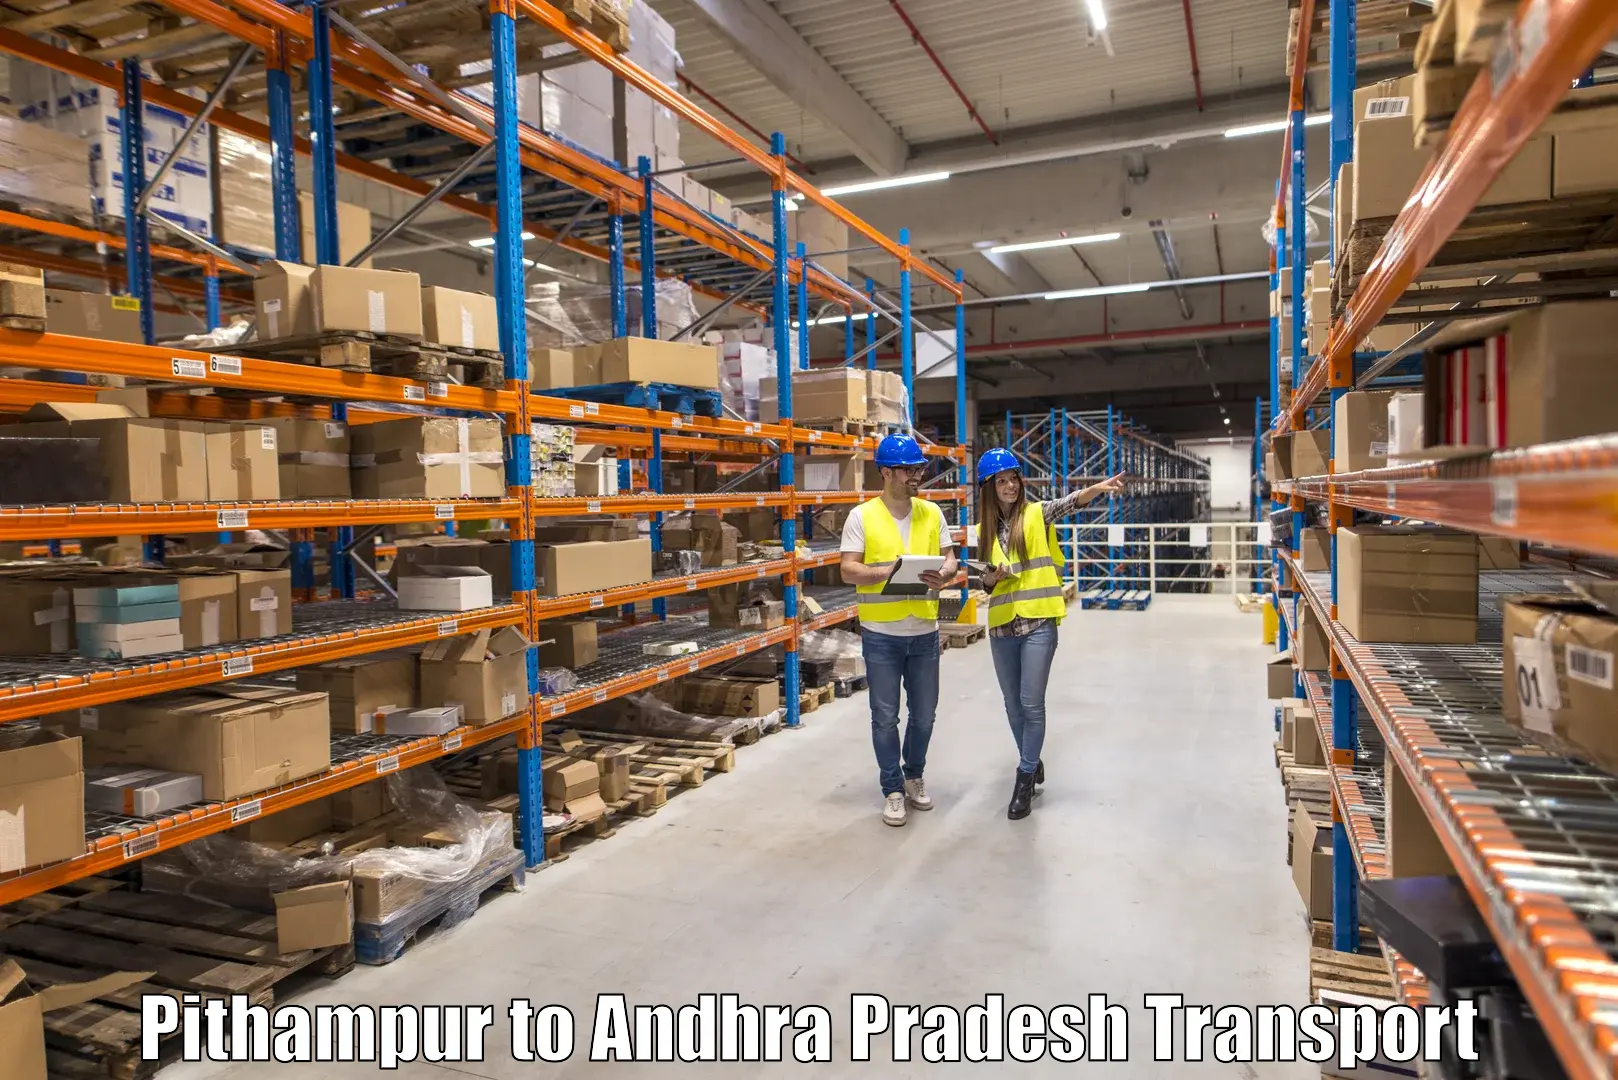 Online transport service Pithampur to Pamuru